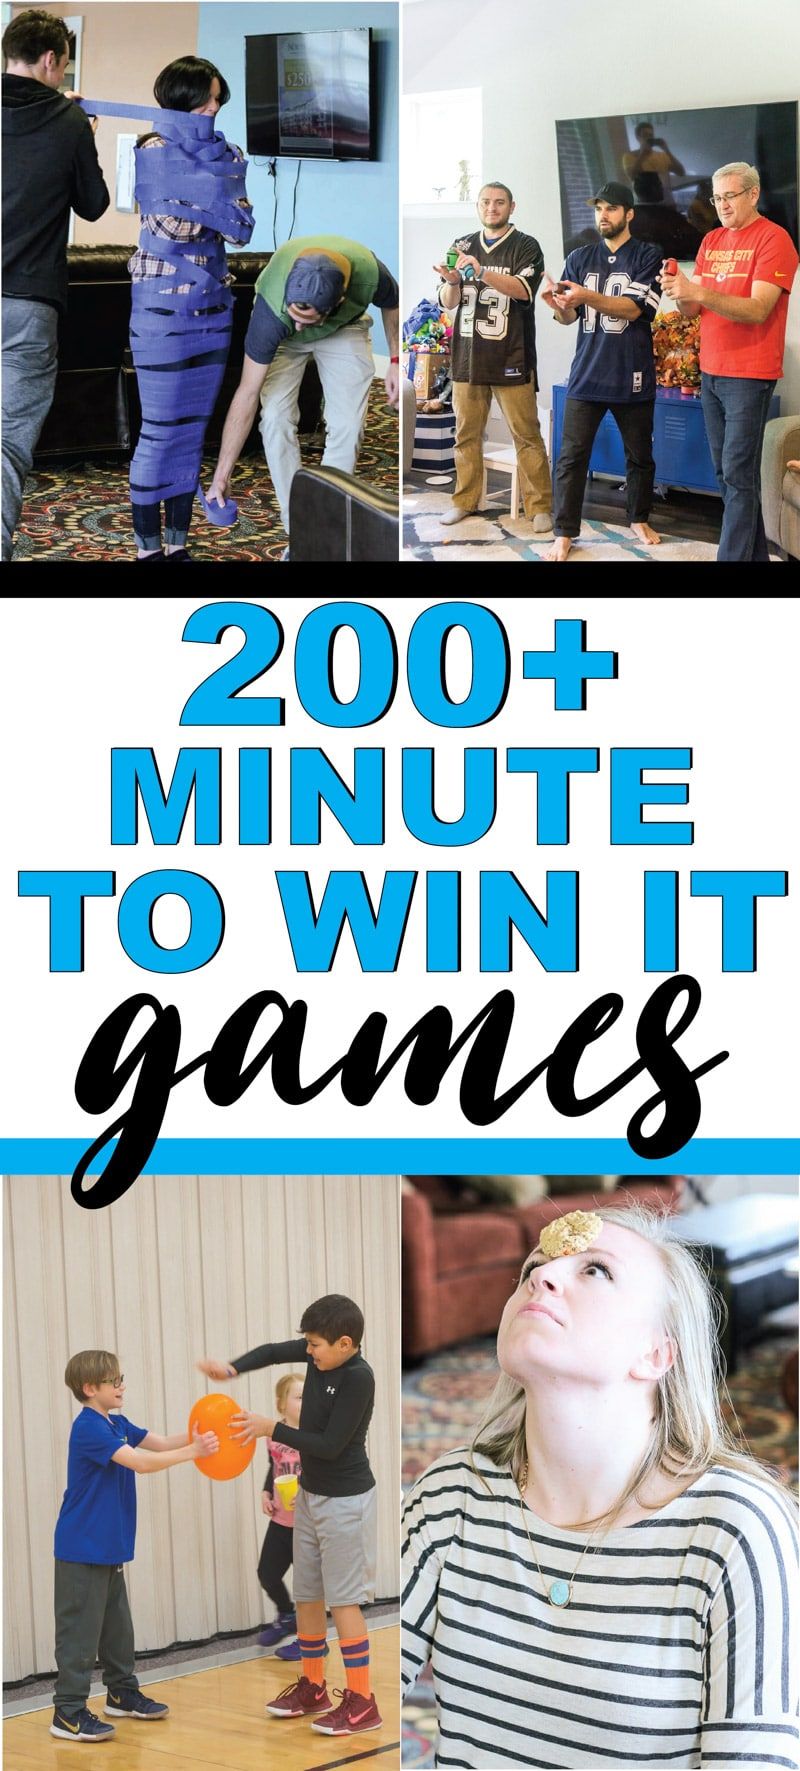 Лучшая минута, чтобы выиграть IT-игры для детей, подростков или даже взрослых! Более 200 забавных игр, которые идеально подходят для воссоединения семьи, школы, школьных вечеринок и многого другого! Легкие игры, веселые командные игры и многое другое!